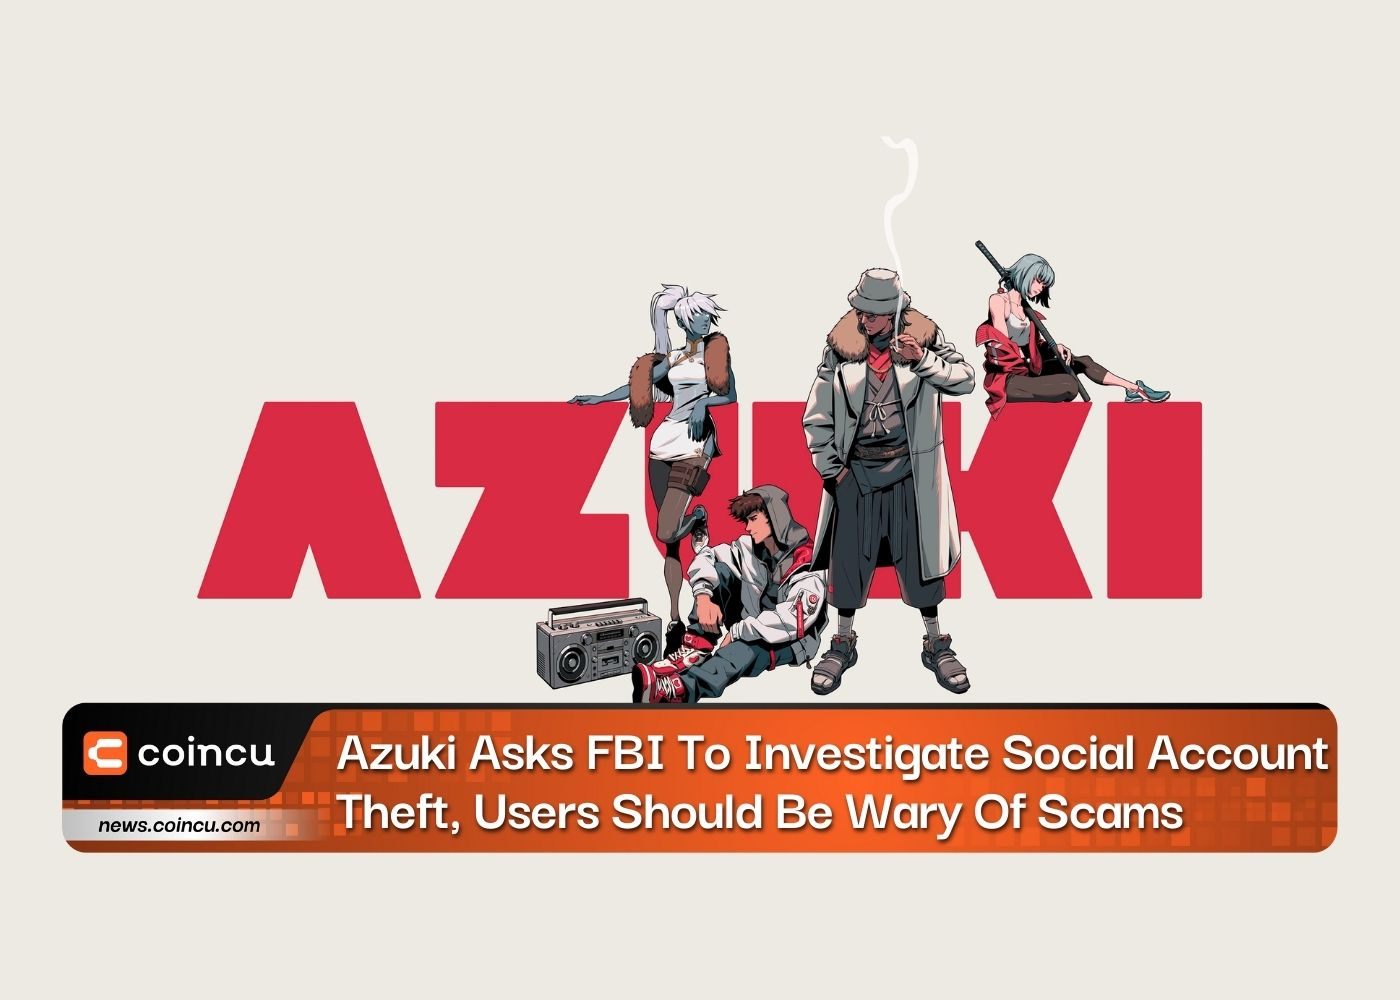 Azuki pide al FBI que investigue el robo de cuentas sociales, los usuarios deben tener cuidado con las estafas